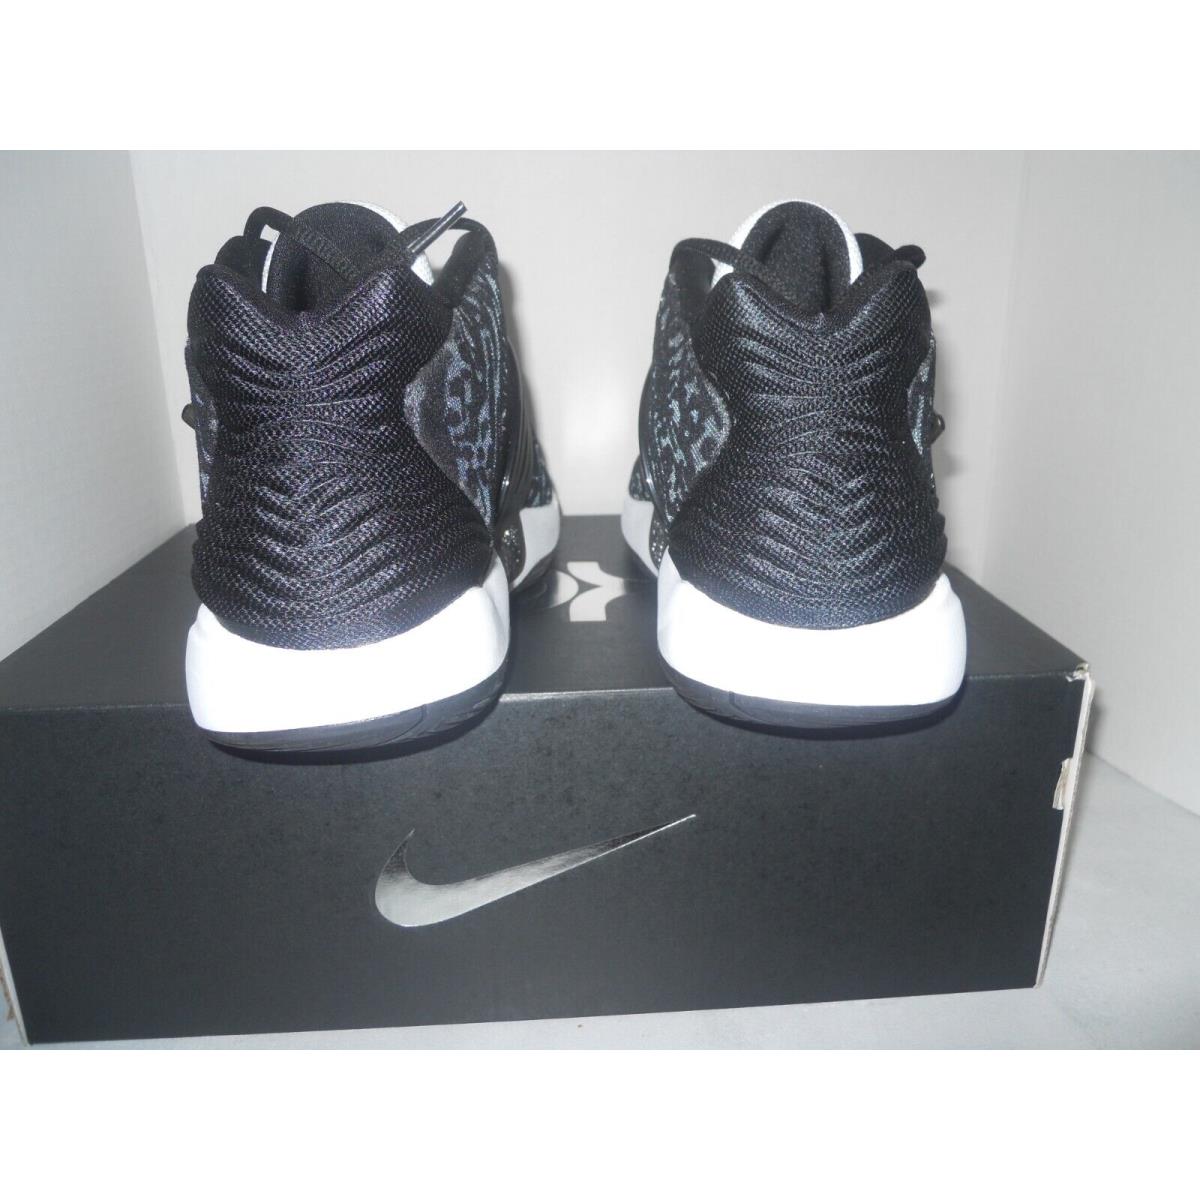 Nike shoes PROMO - Black 3